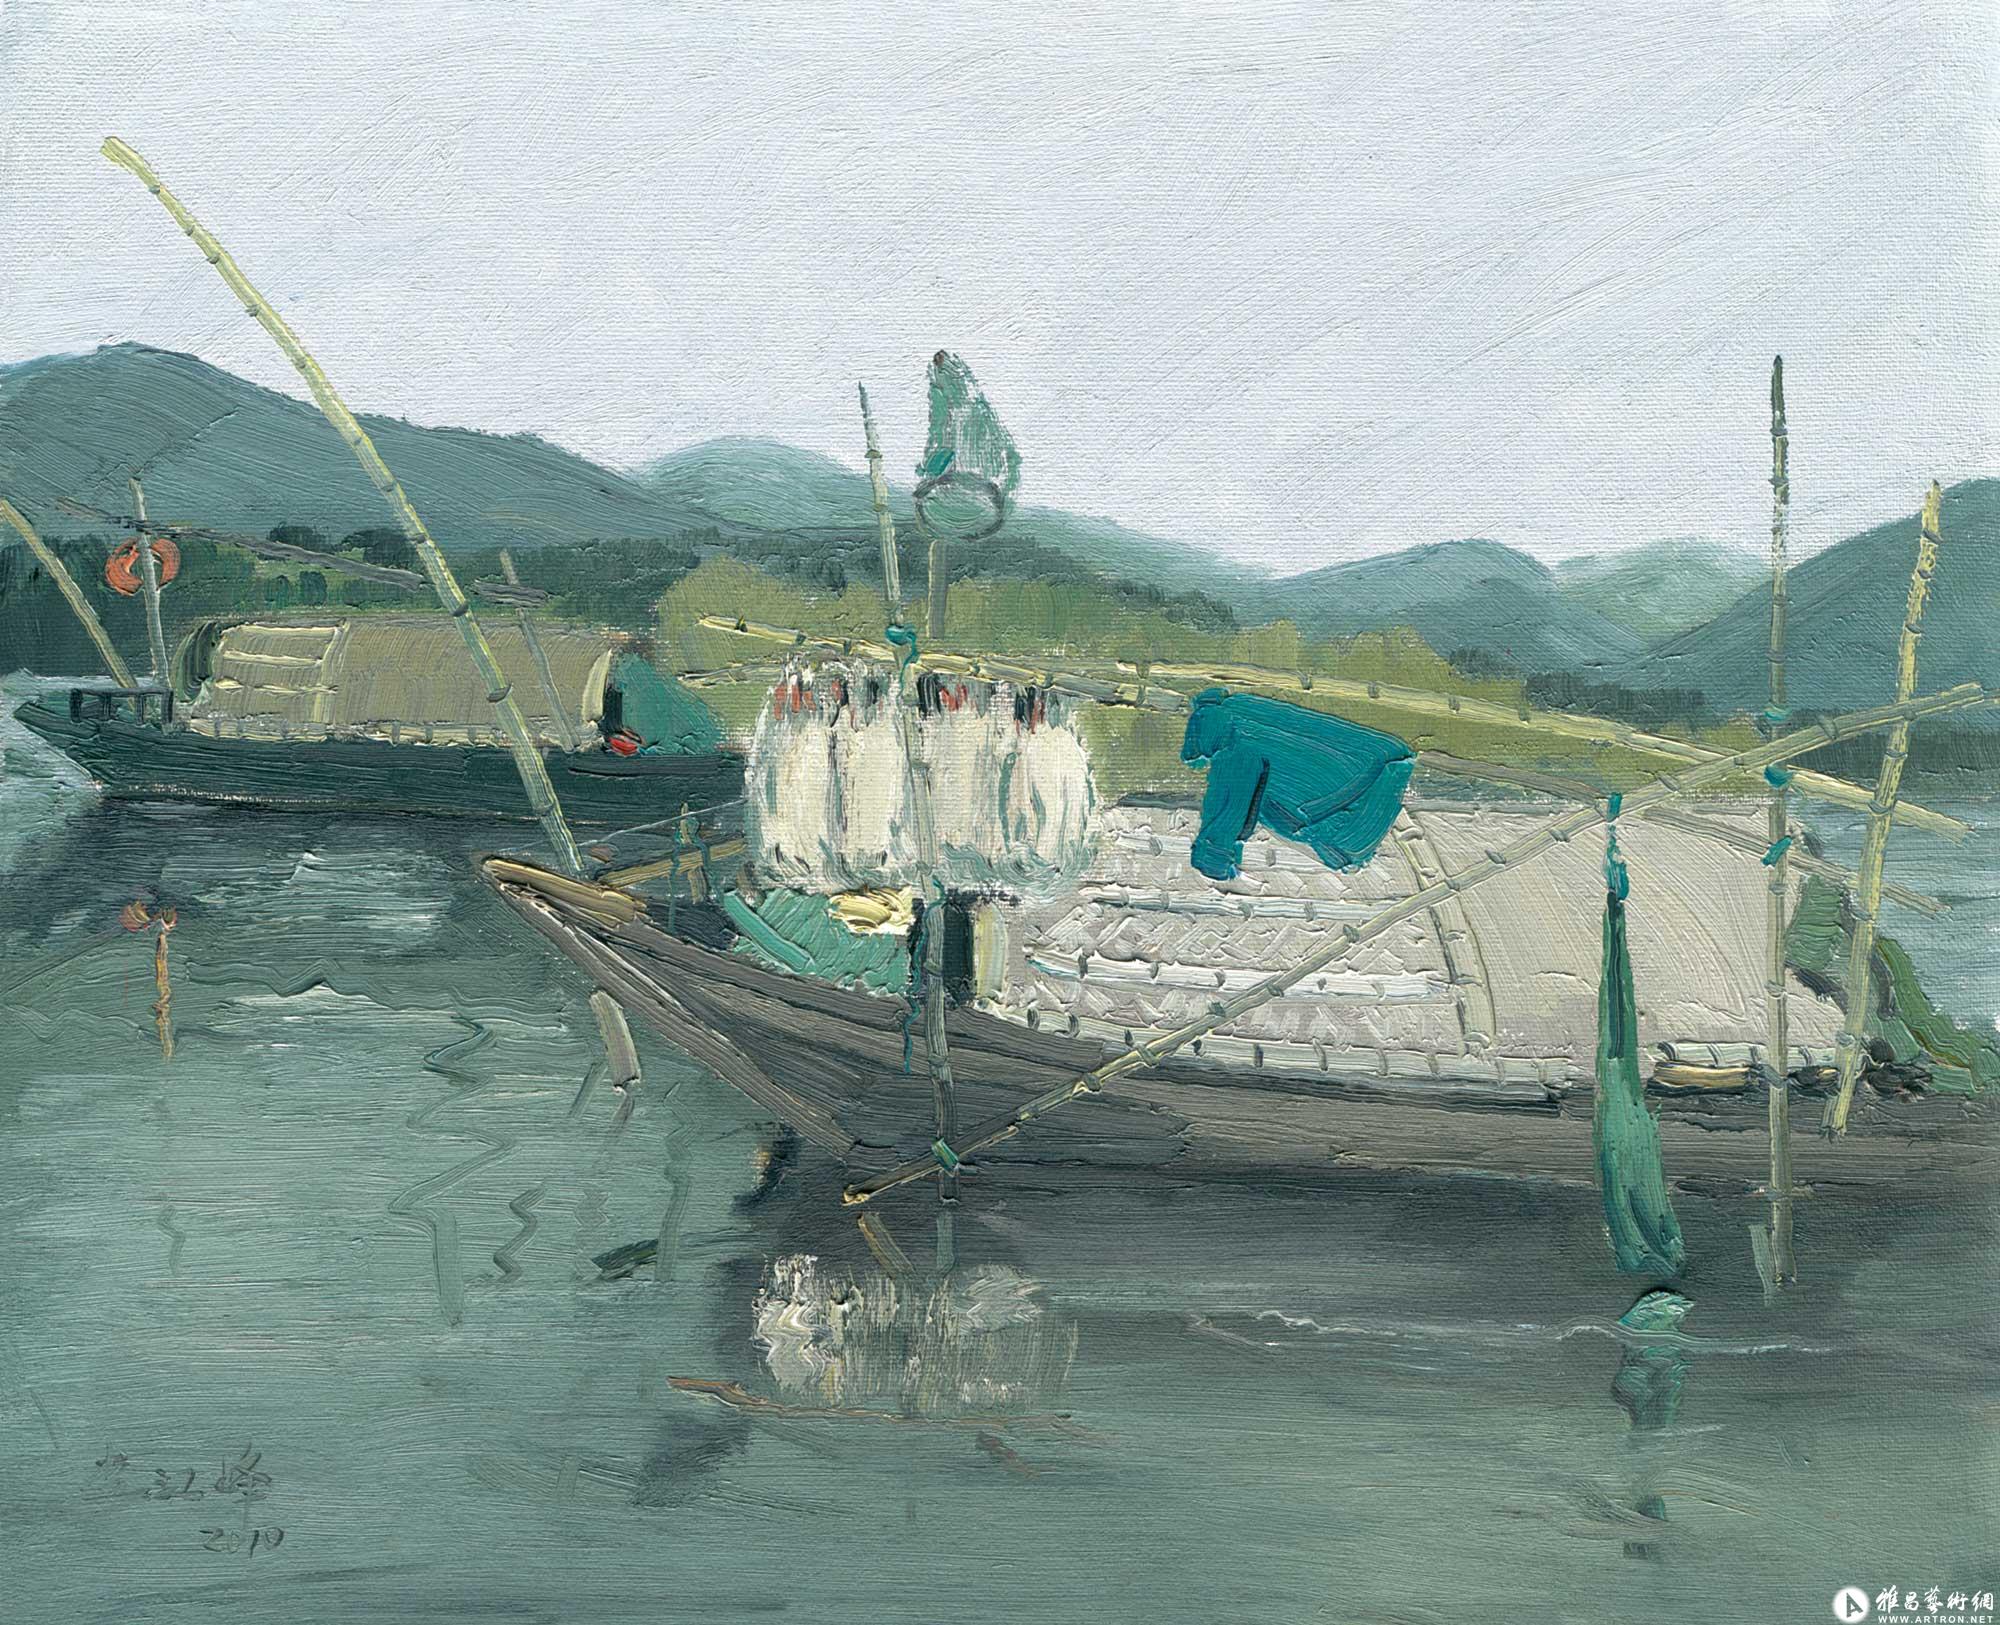 丽水·瓯江打渔船^_^Lishui·Fishing boats in Oujiang River